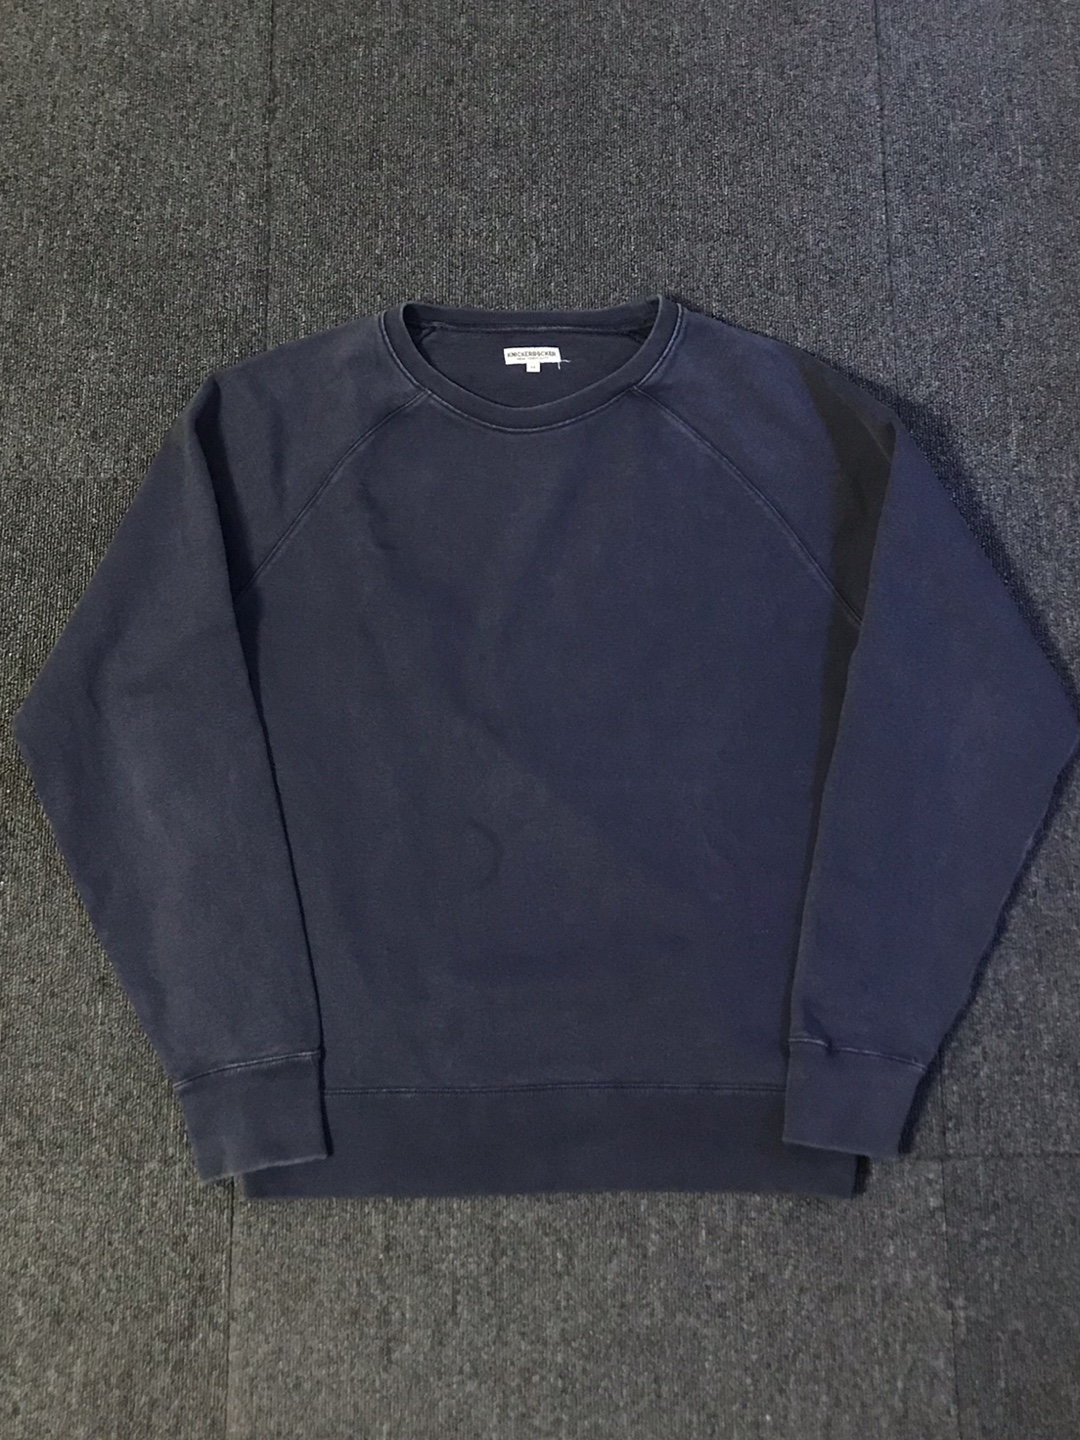 knickerbocker faded navy sweatshirt (M size, ~103 추천)